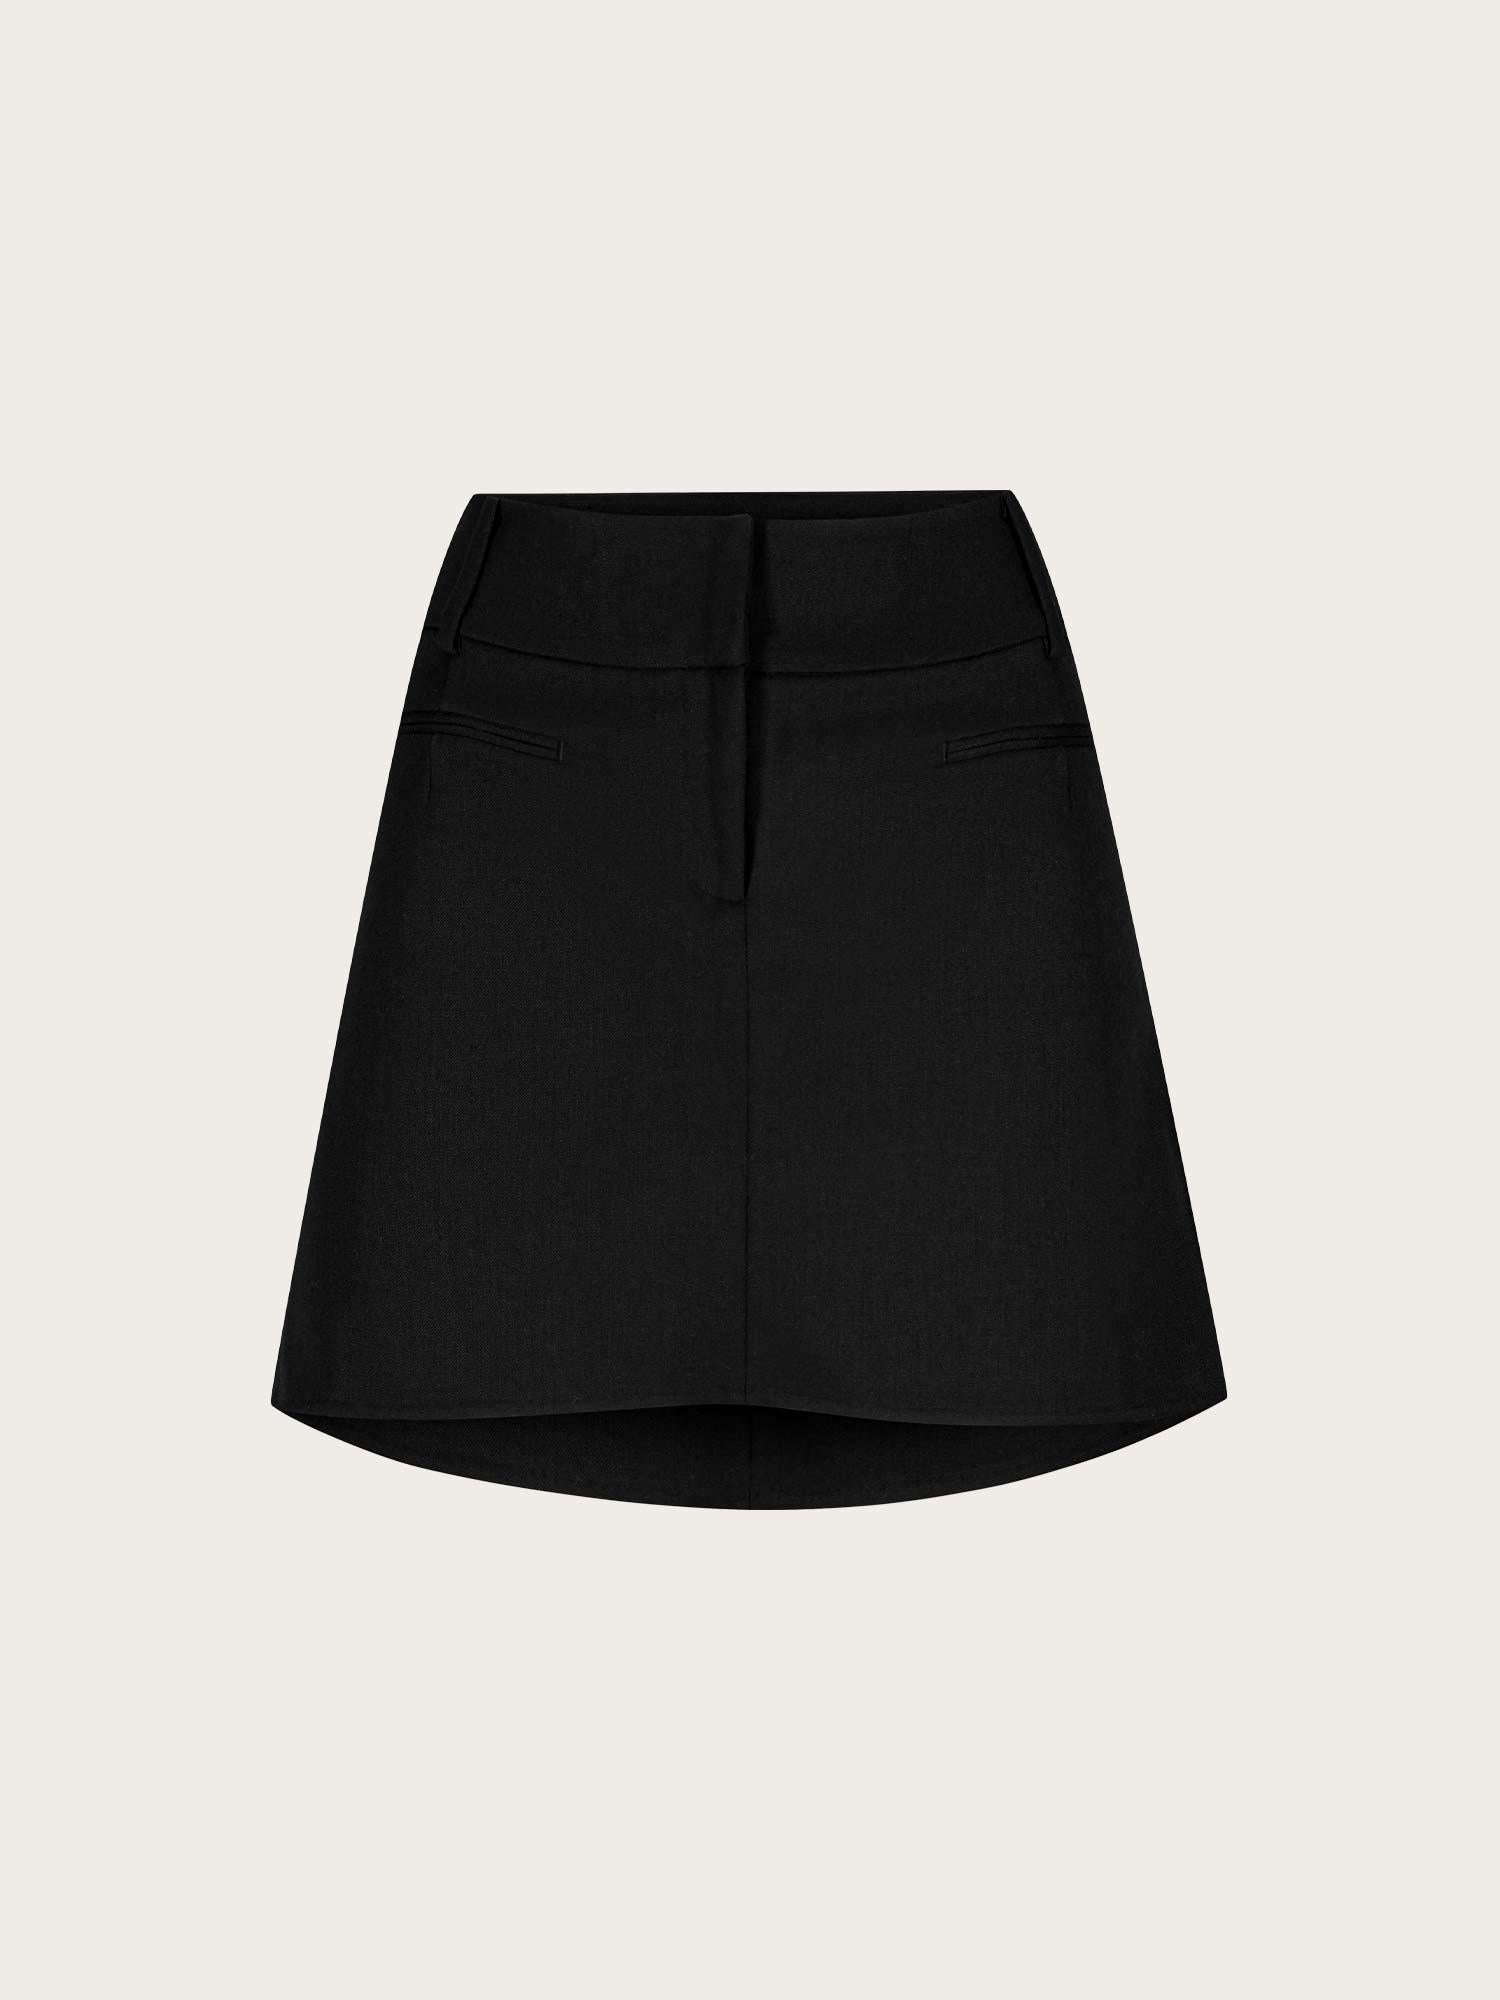 London Skirt - Black